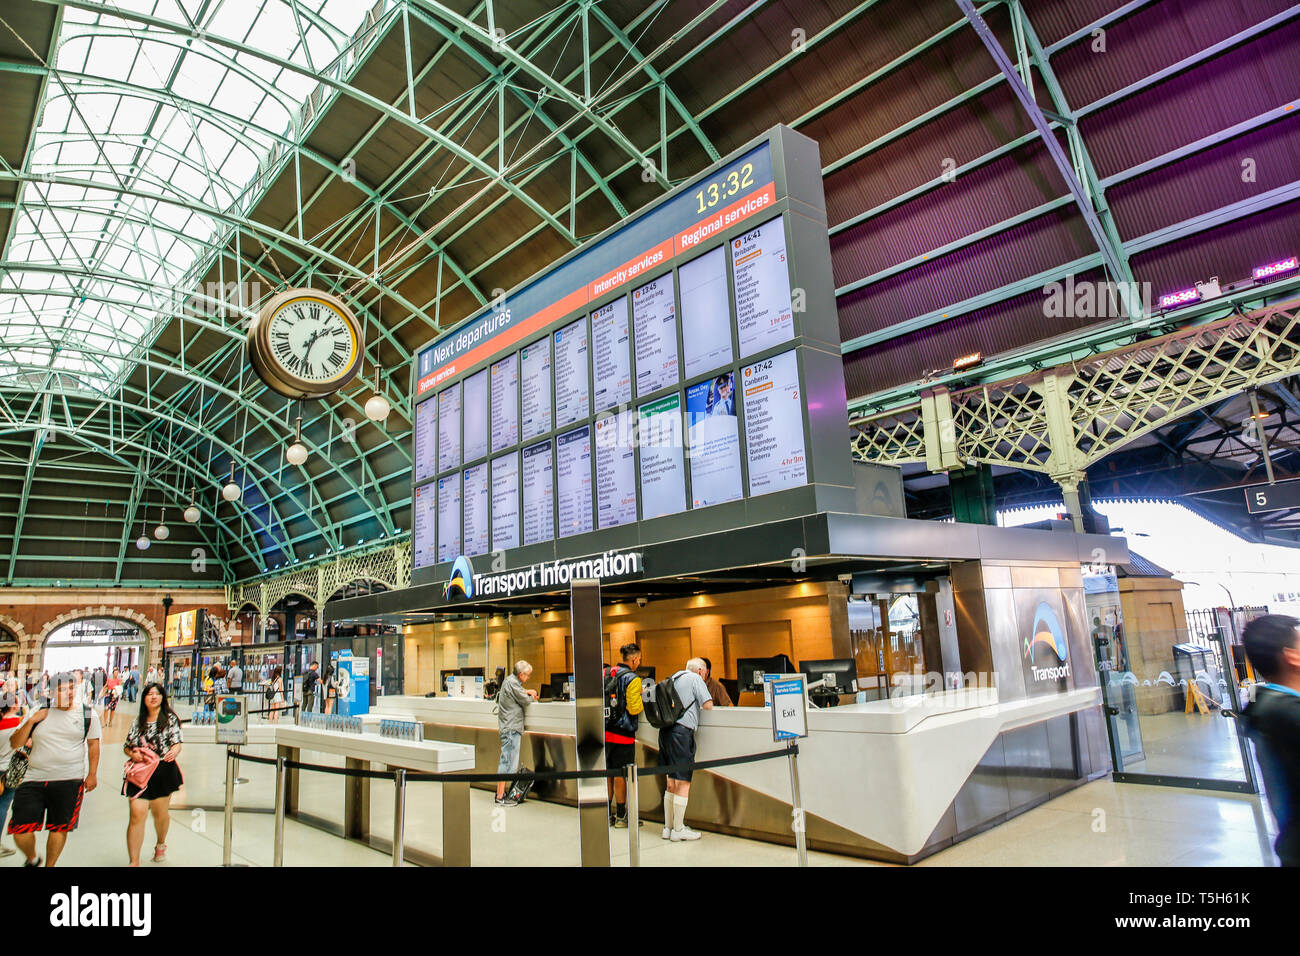 Gare centrale, station terminus ferroviaire dans le centre-ville de Sydney, Nouvelle Galles du Sud en Australie, avec l'horloge de la gare et des transports information board Banque D'Images